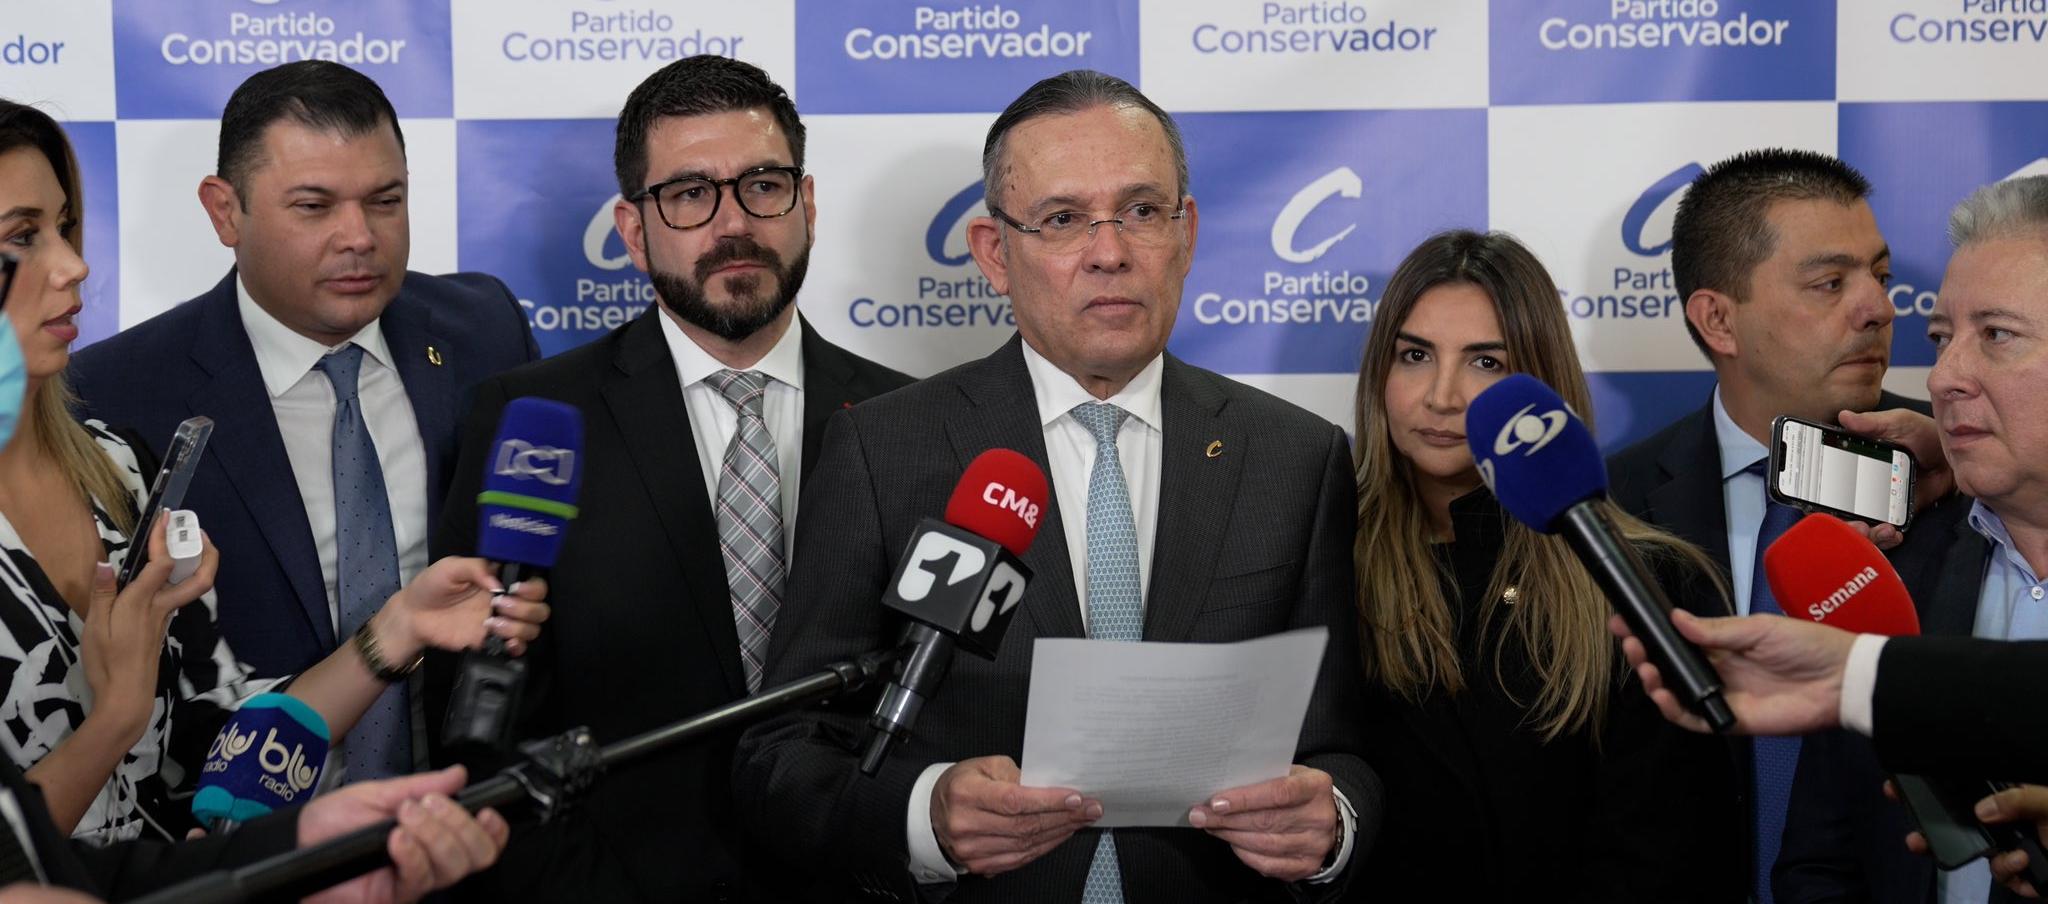 Efraín Cepeda, presidente del Partido Conservador, lee el comunicado de prensa.